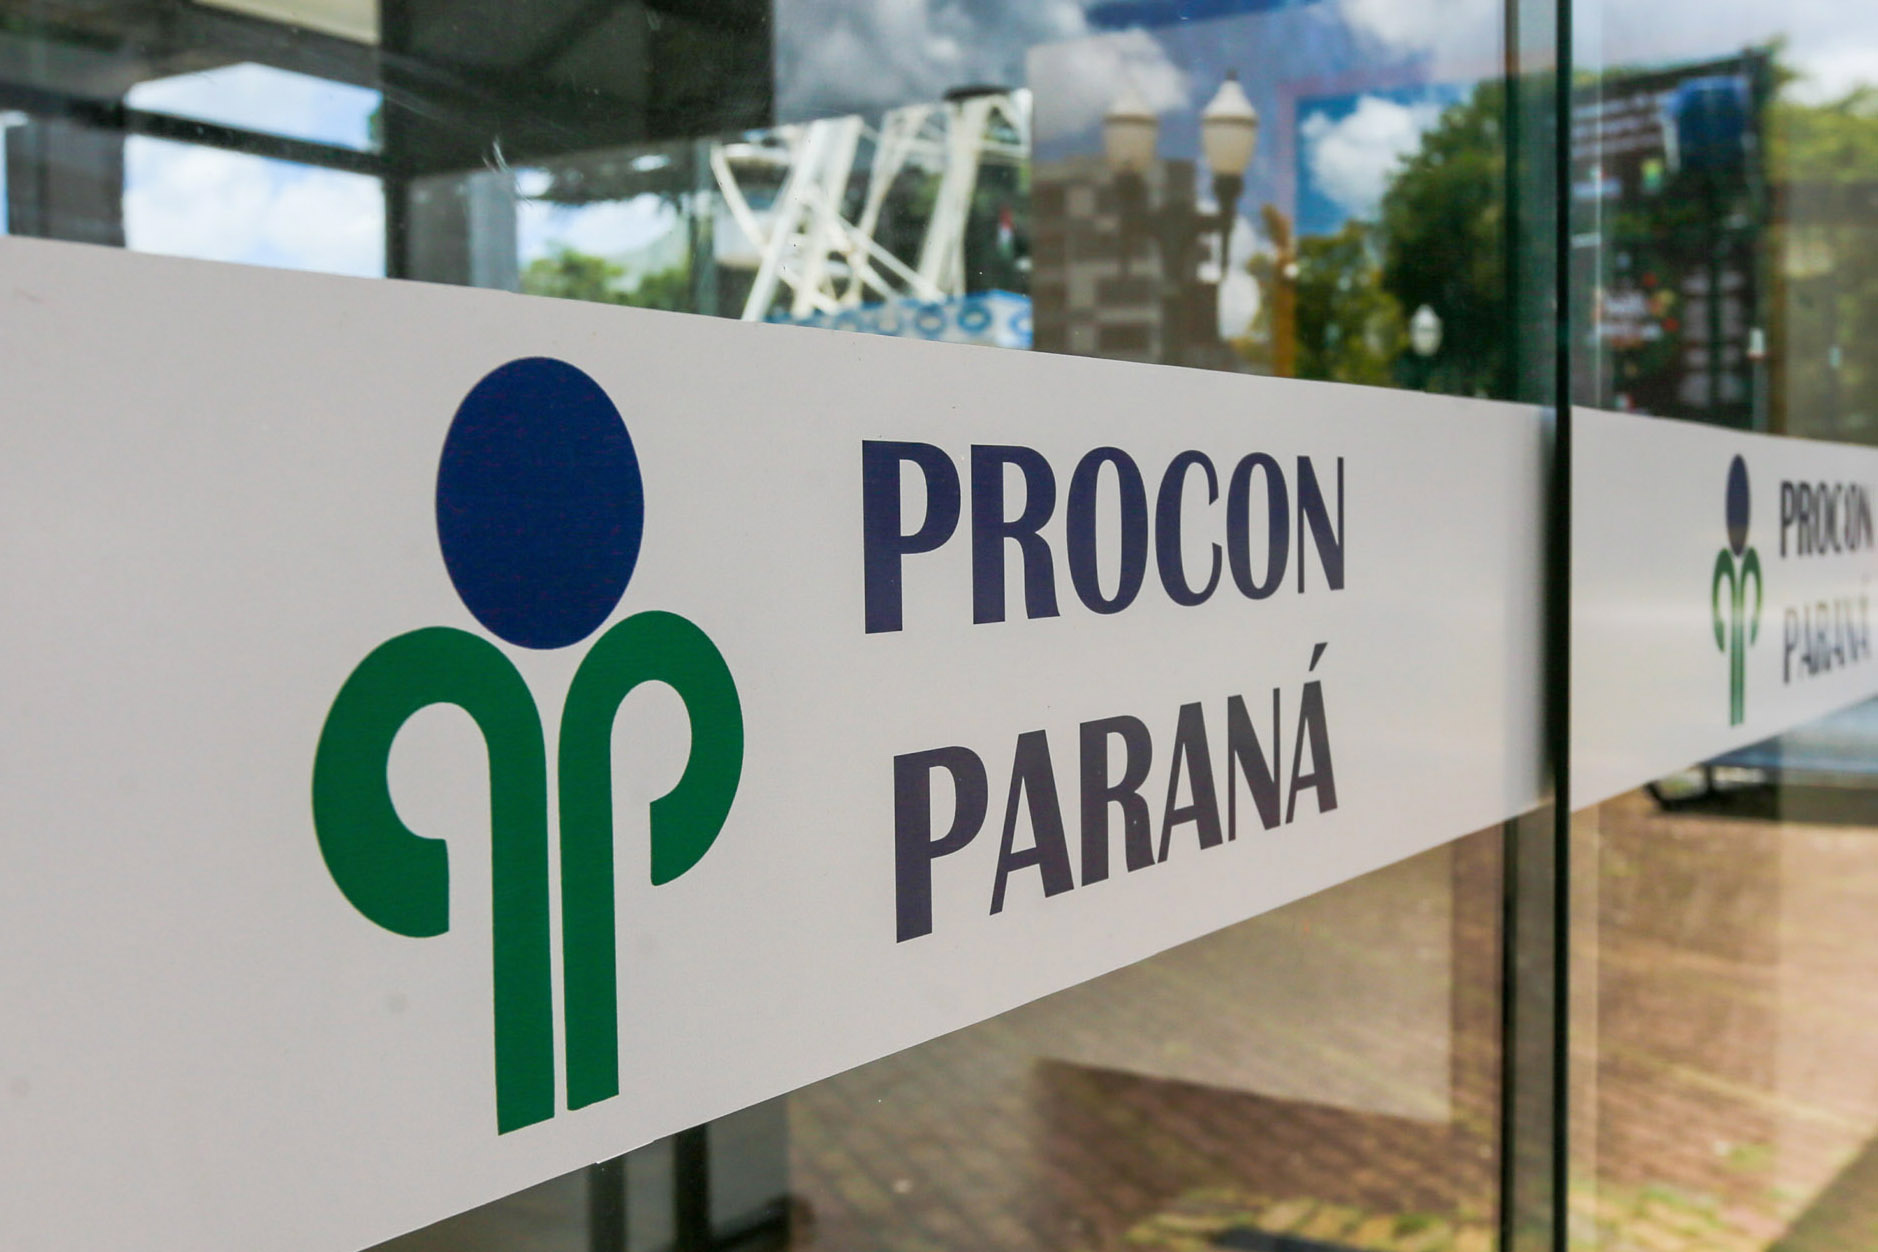 PROCON-PR oferece cursos gratuitos sobre Direitos do Consumidor